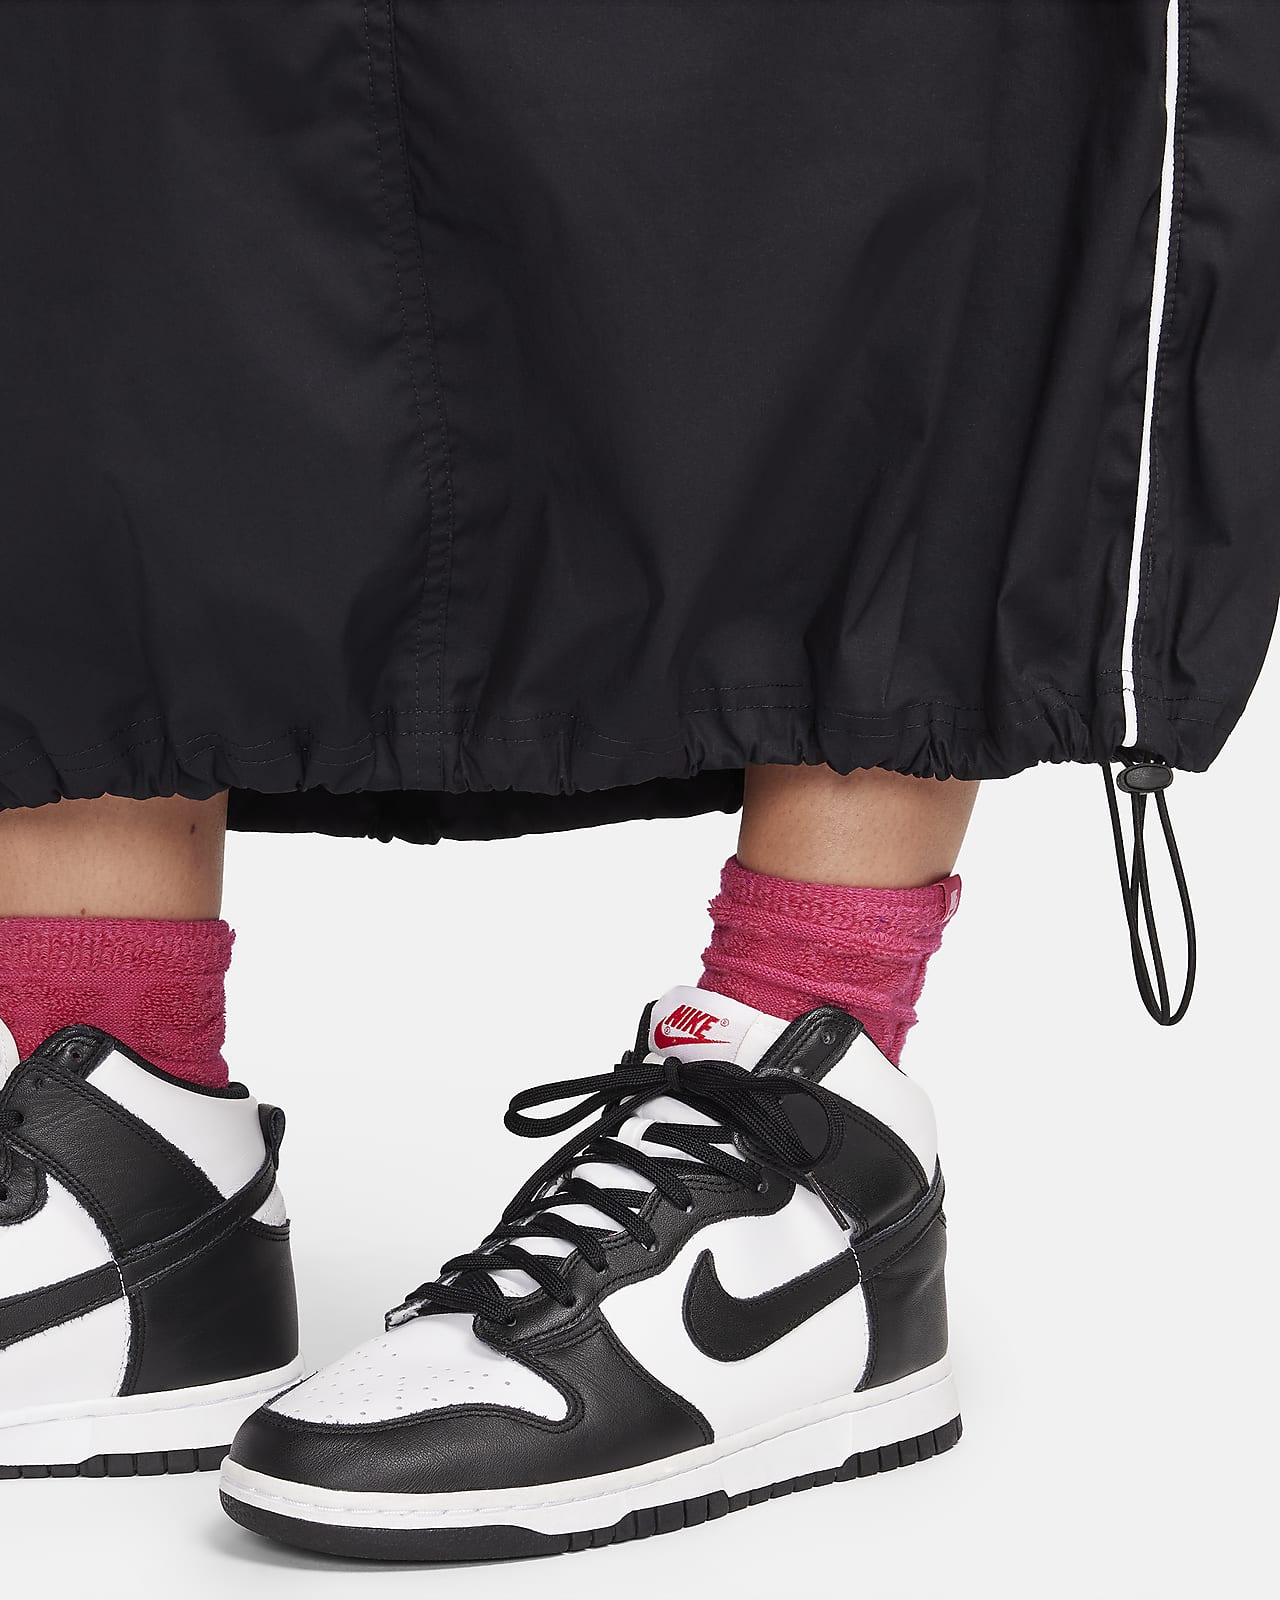 Nike Women's High-Waisted Woven Skirt – Rock City Kicks